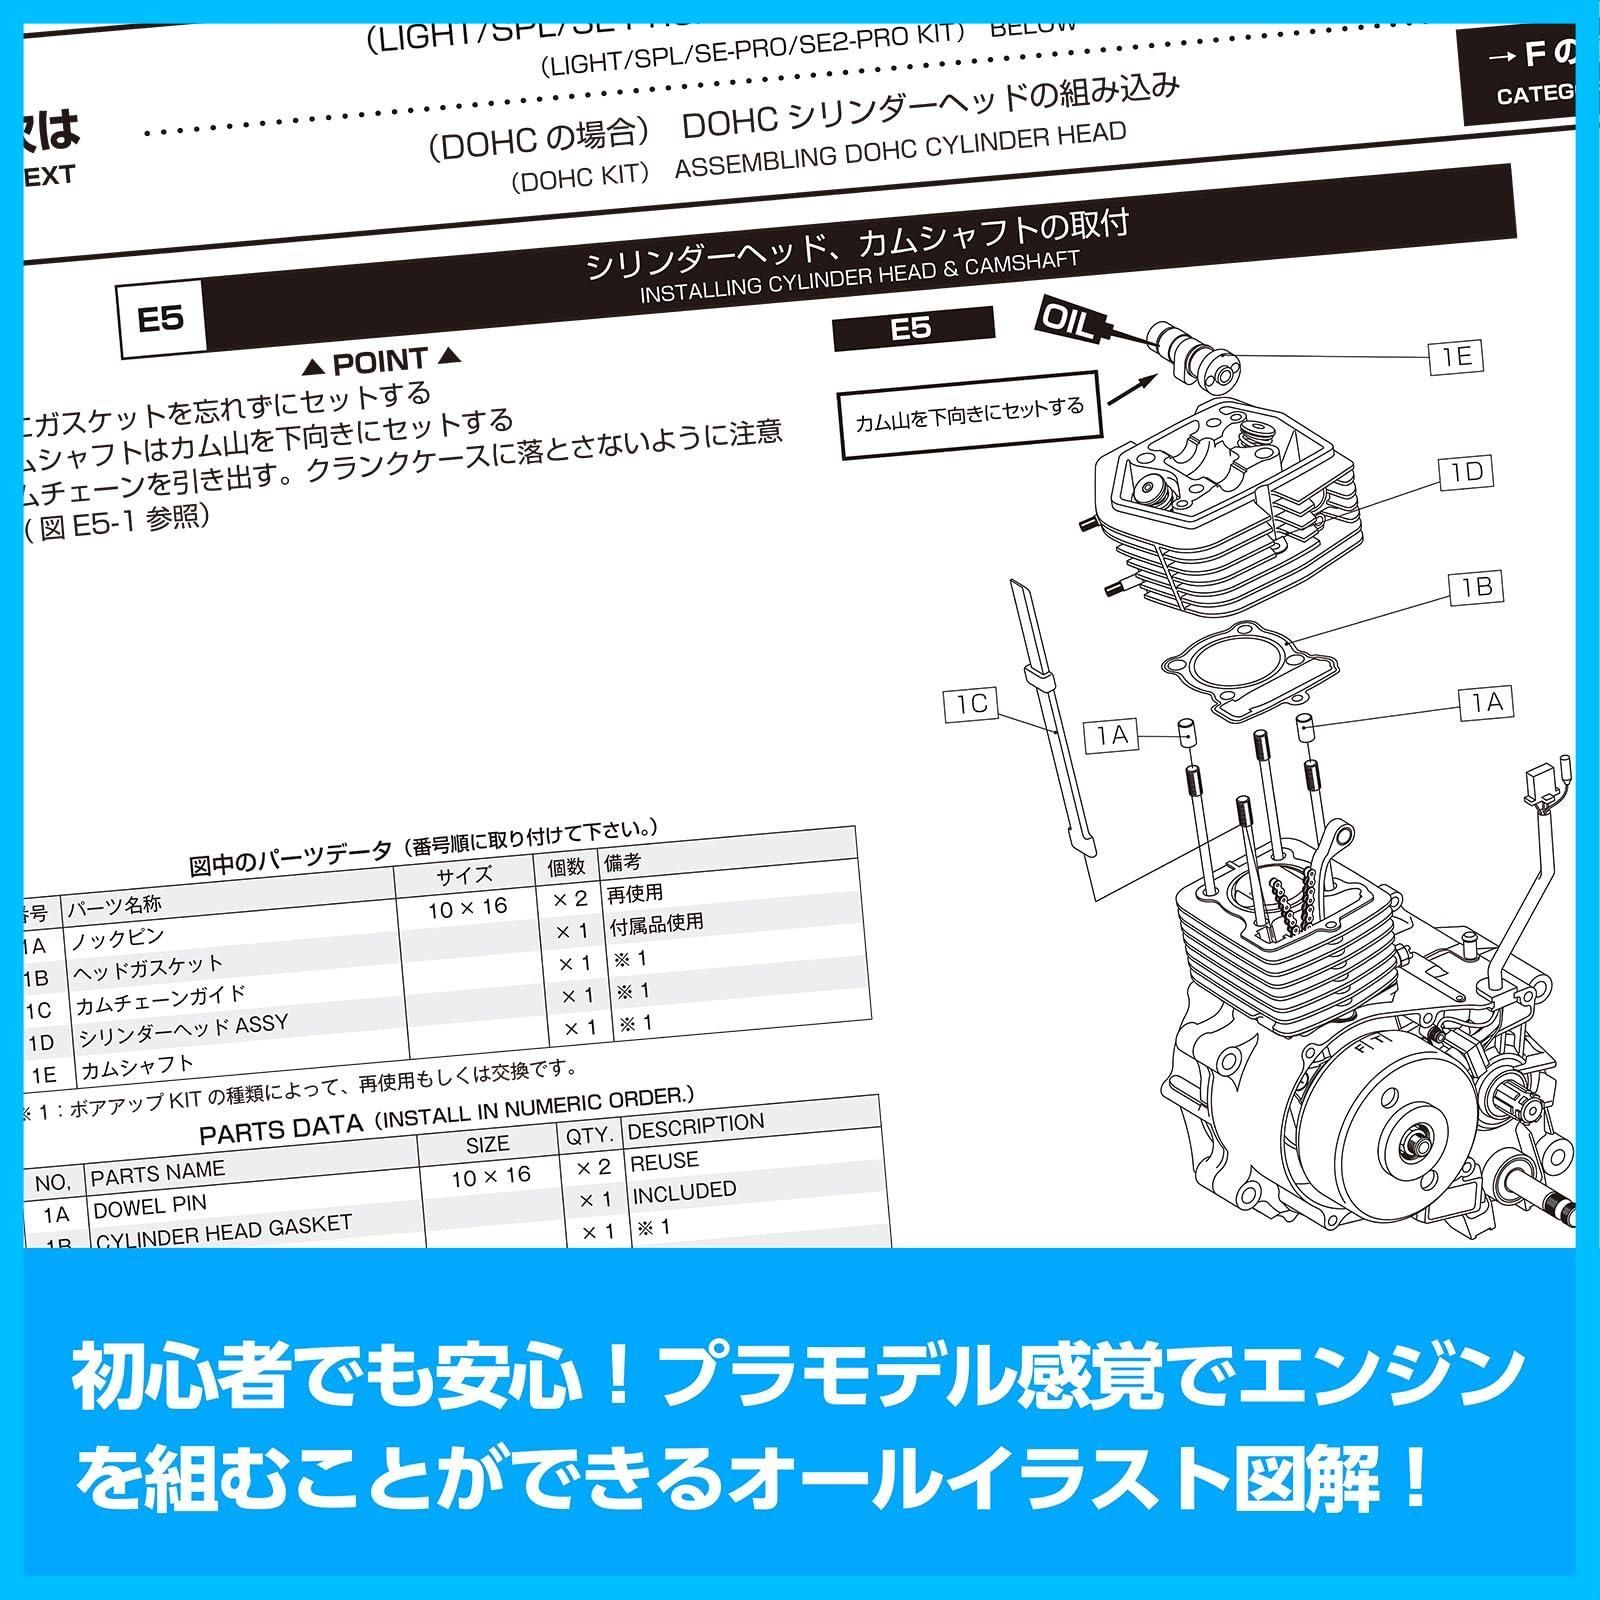 【人気商品】エイプ系縦型エンジン 腰上編 00-0901001 虎の巻 ボアアップキットの組み付け方 キタコKITACO